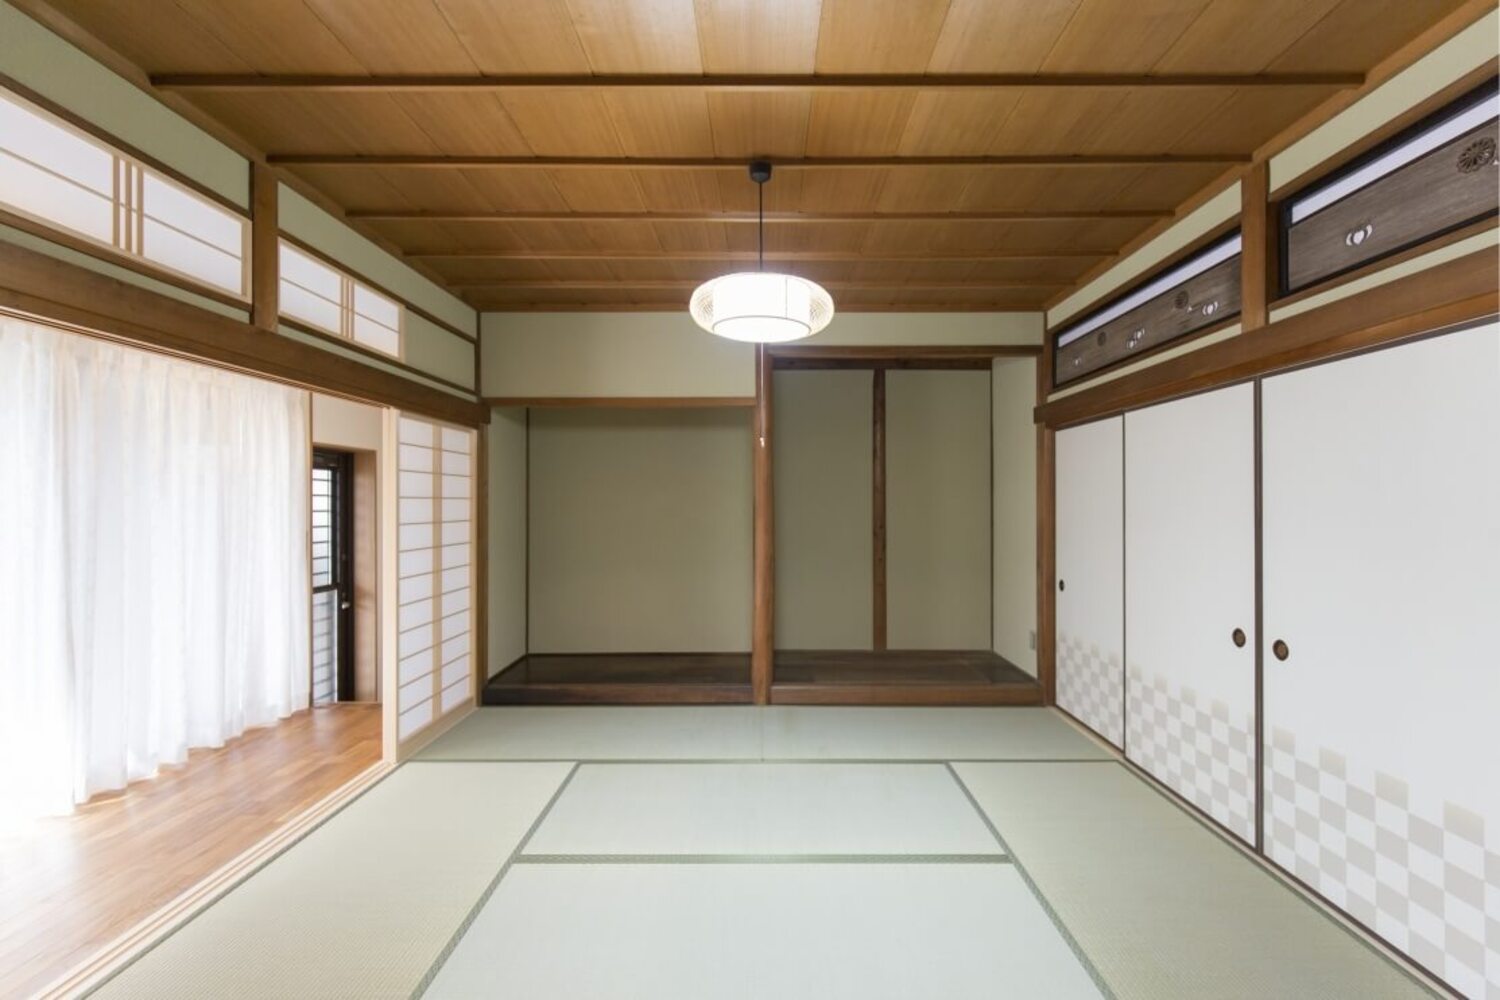 新しい畳で心地よい空間となった和室